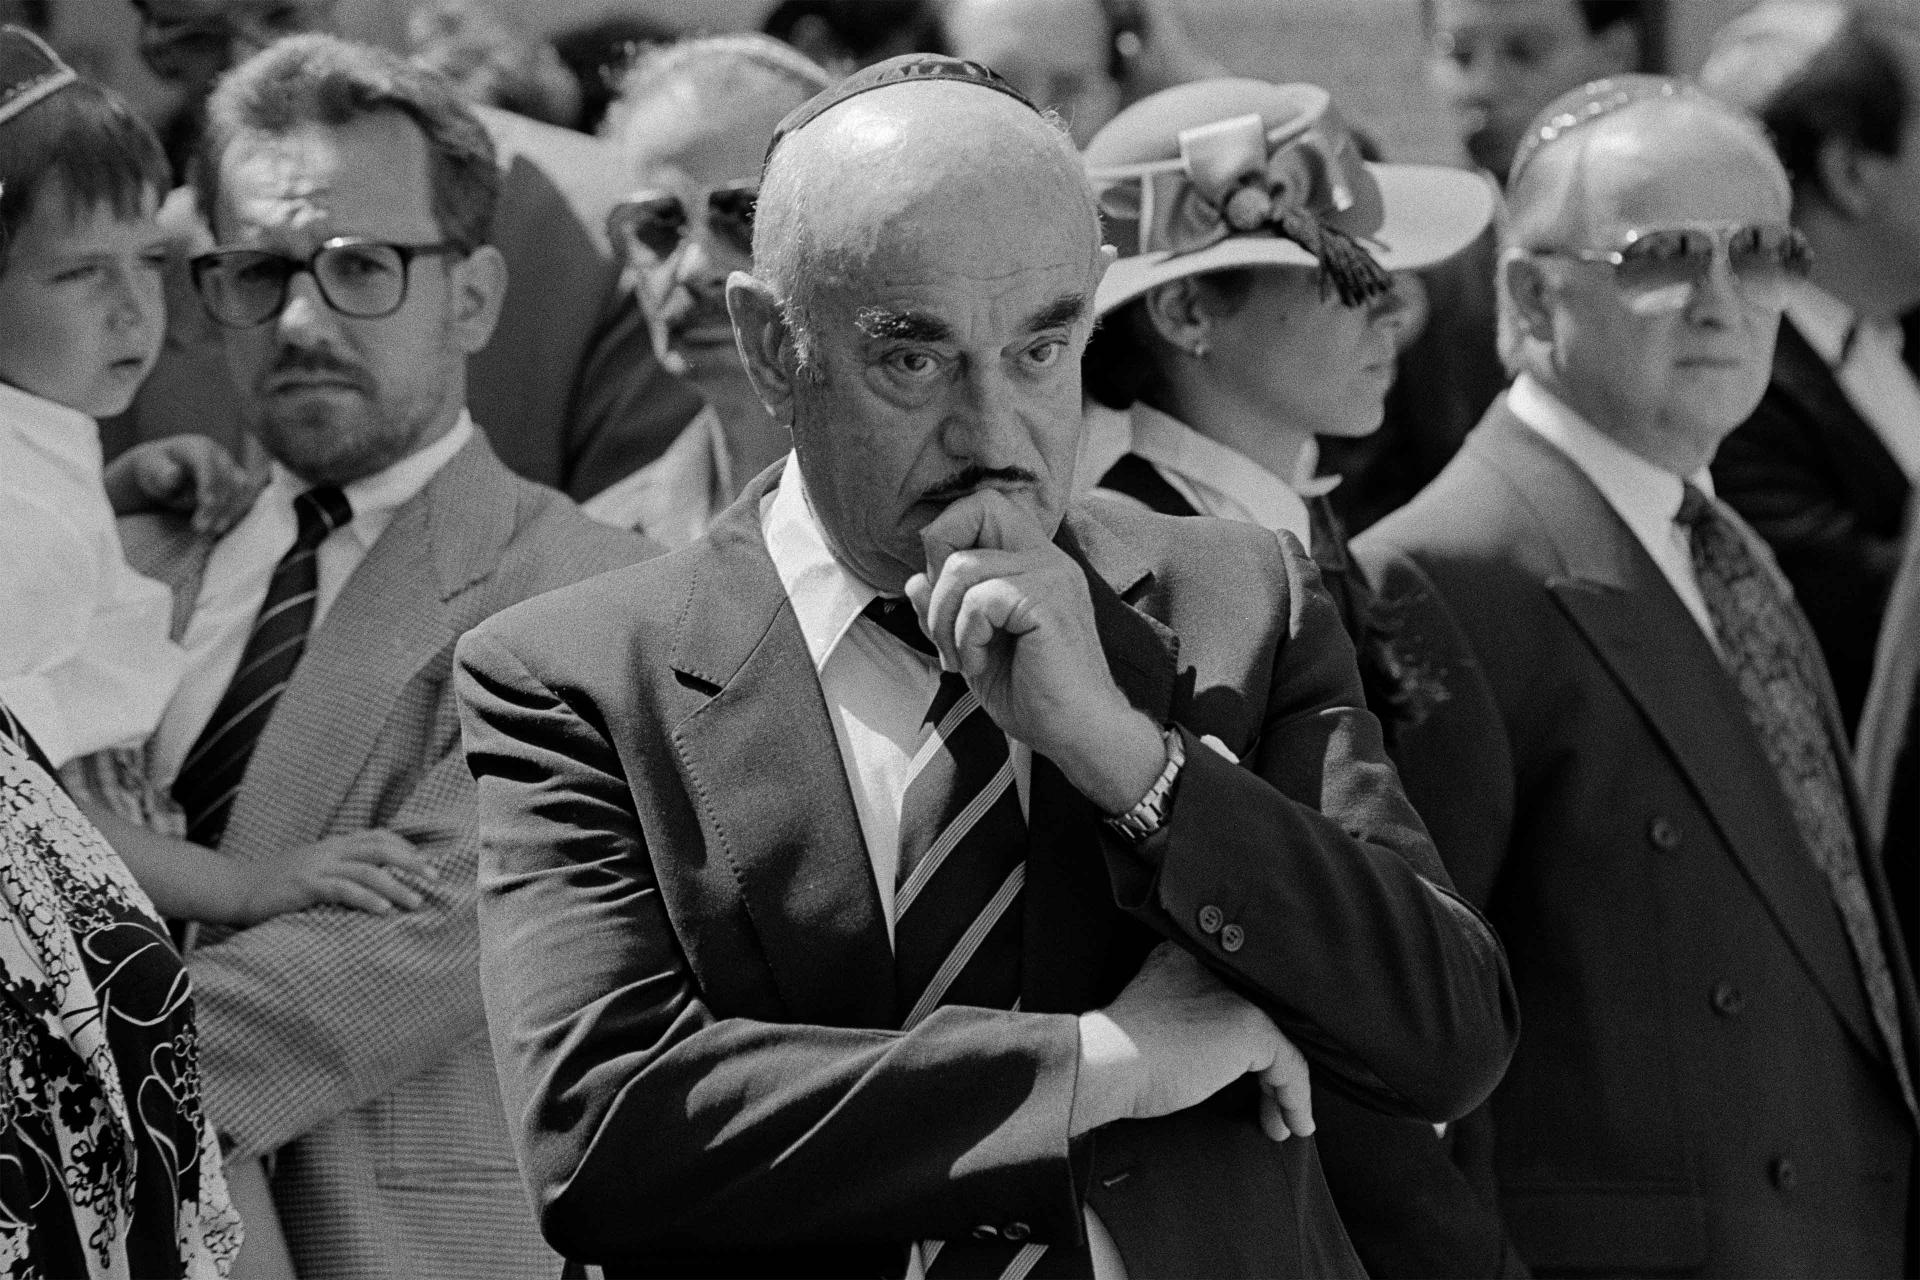 Schwarz-Weiß-Fotografie: Artur Brauner steht inmitten anderer Trauergäste, er hält die linke Hand an sein Kinn und winkelt den rechten Arm an